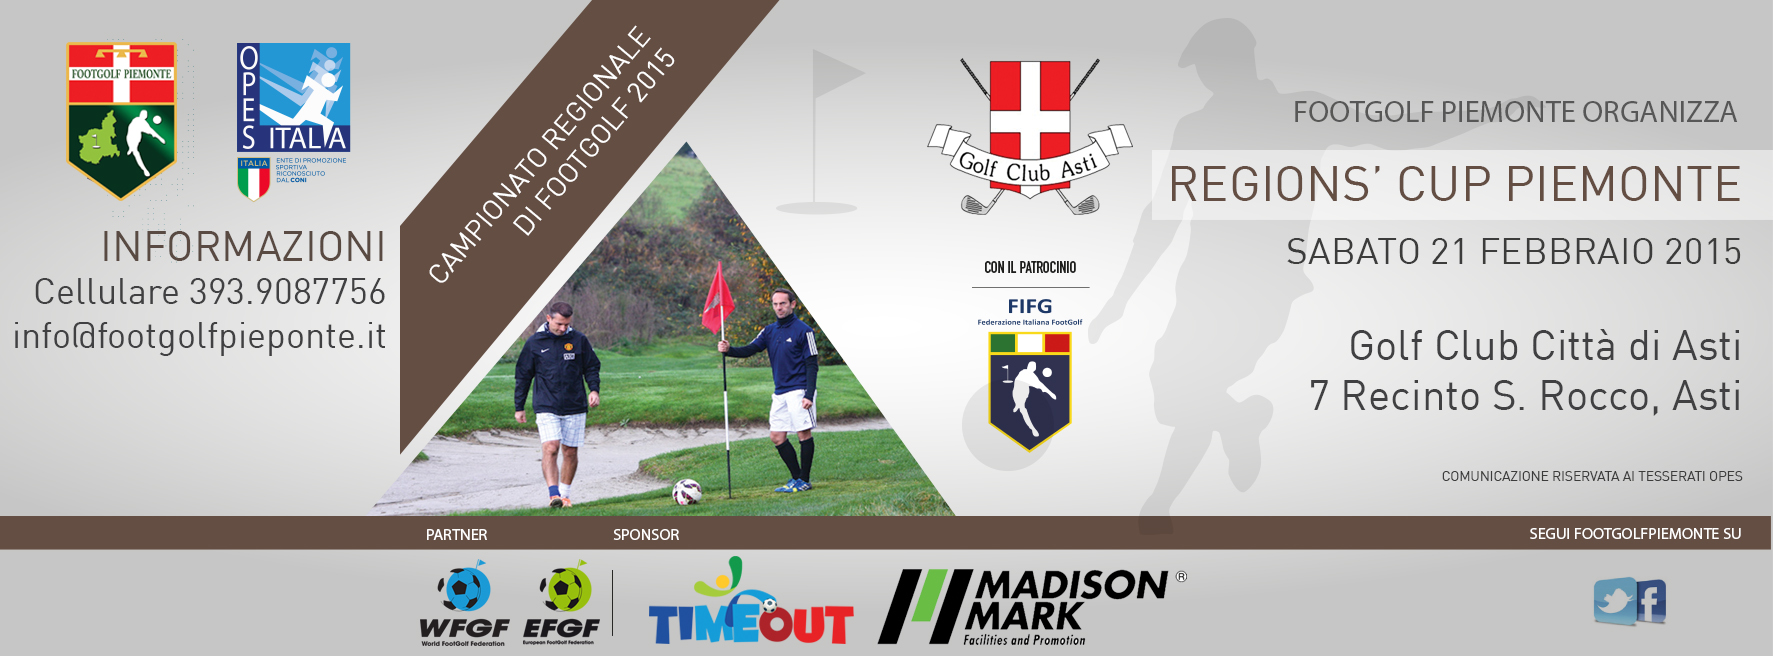 Locandina 4° tappa Regions' Cup Footgolf Piemonte ad Asti sabato 21 febbraio 2015 Facebook